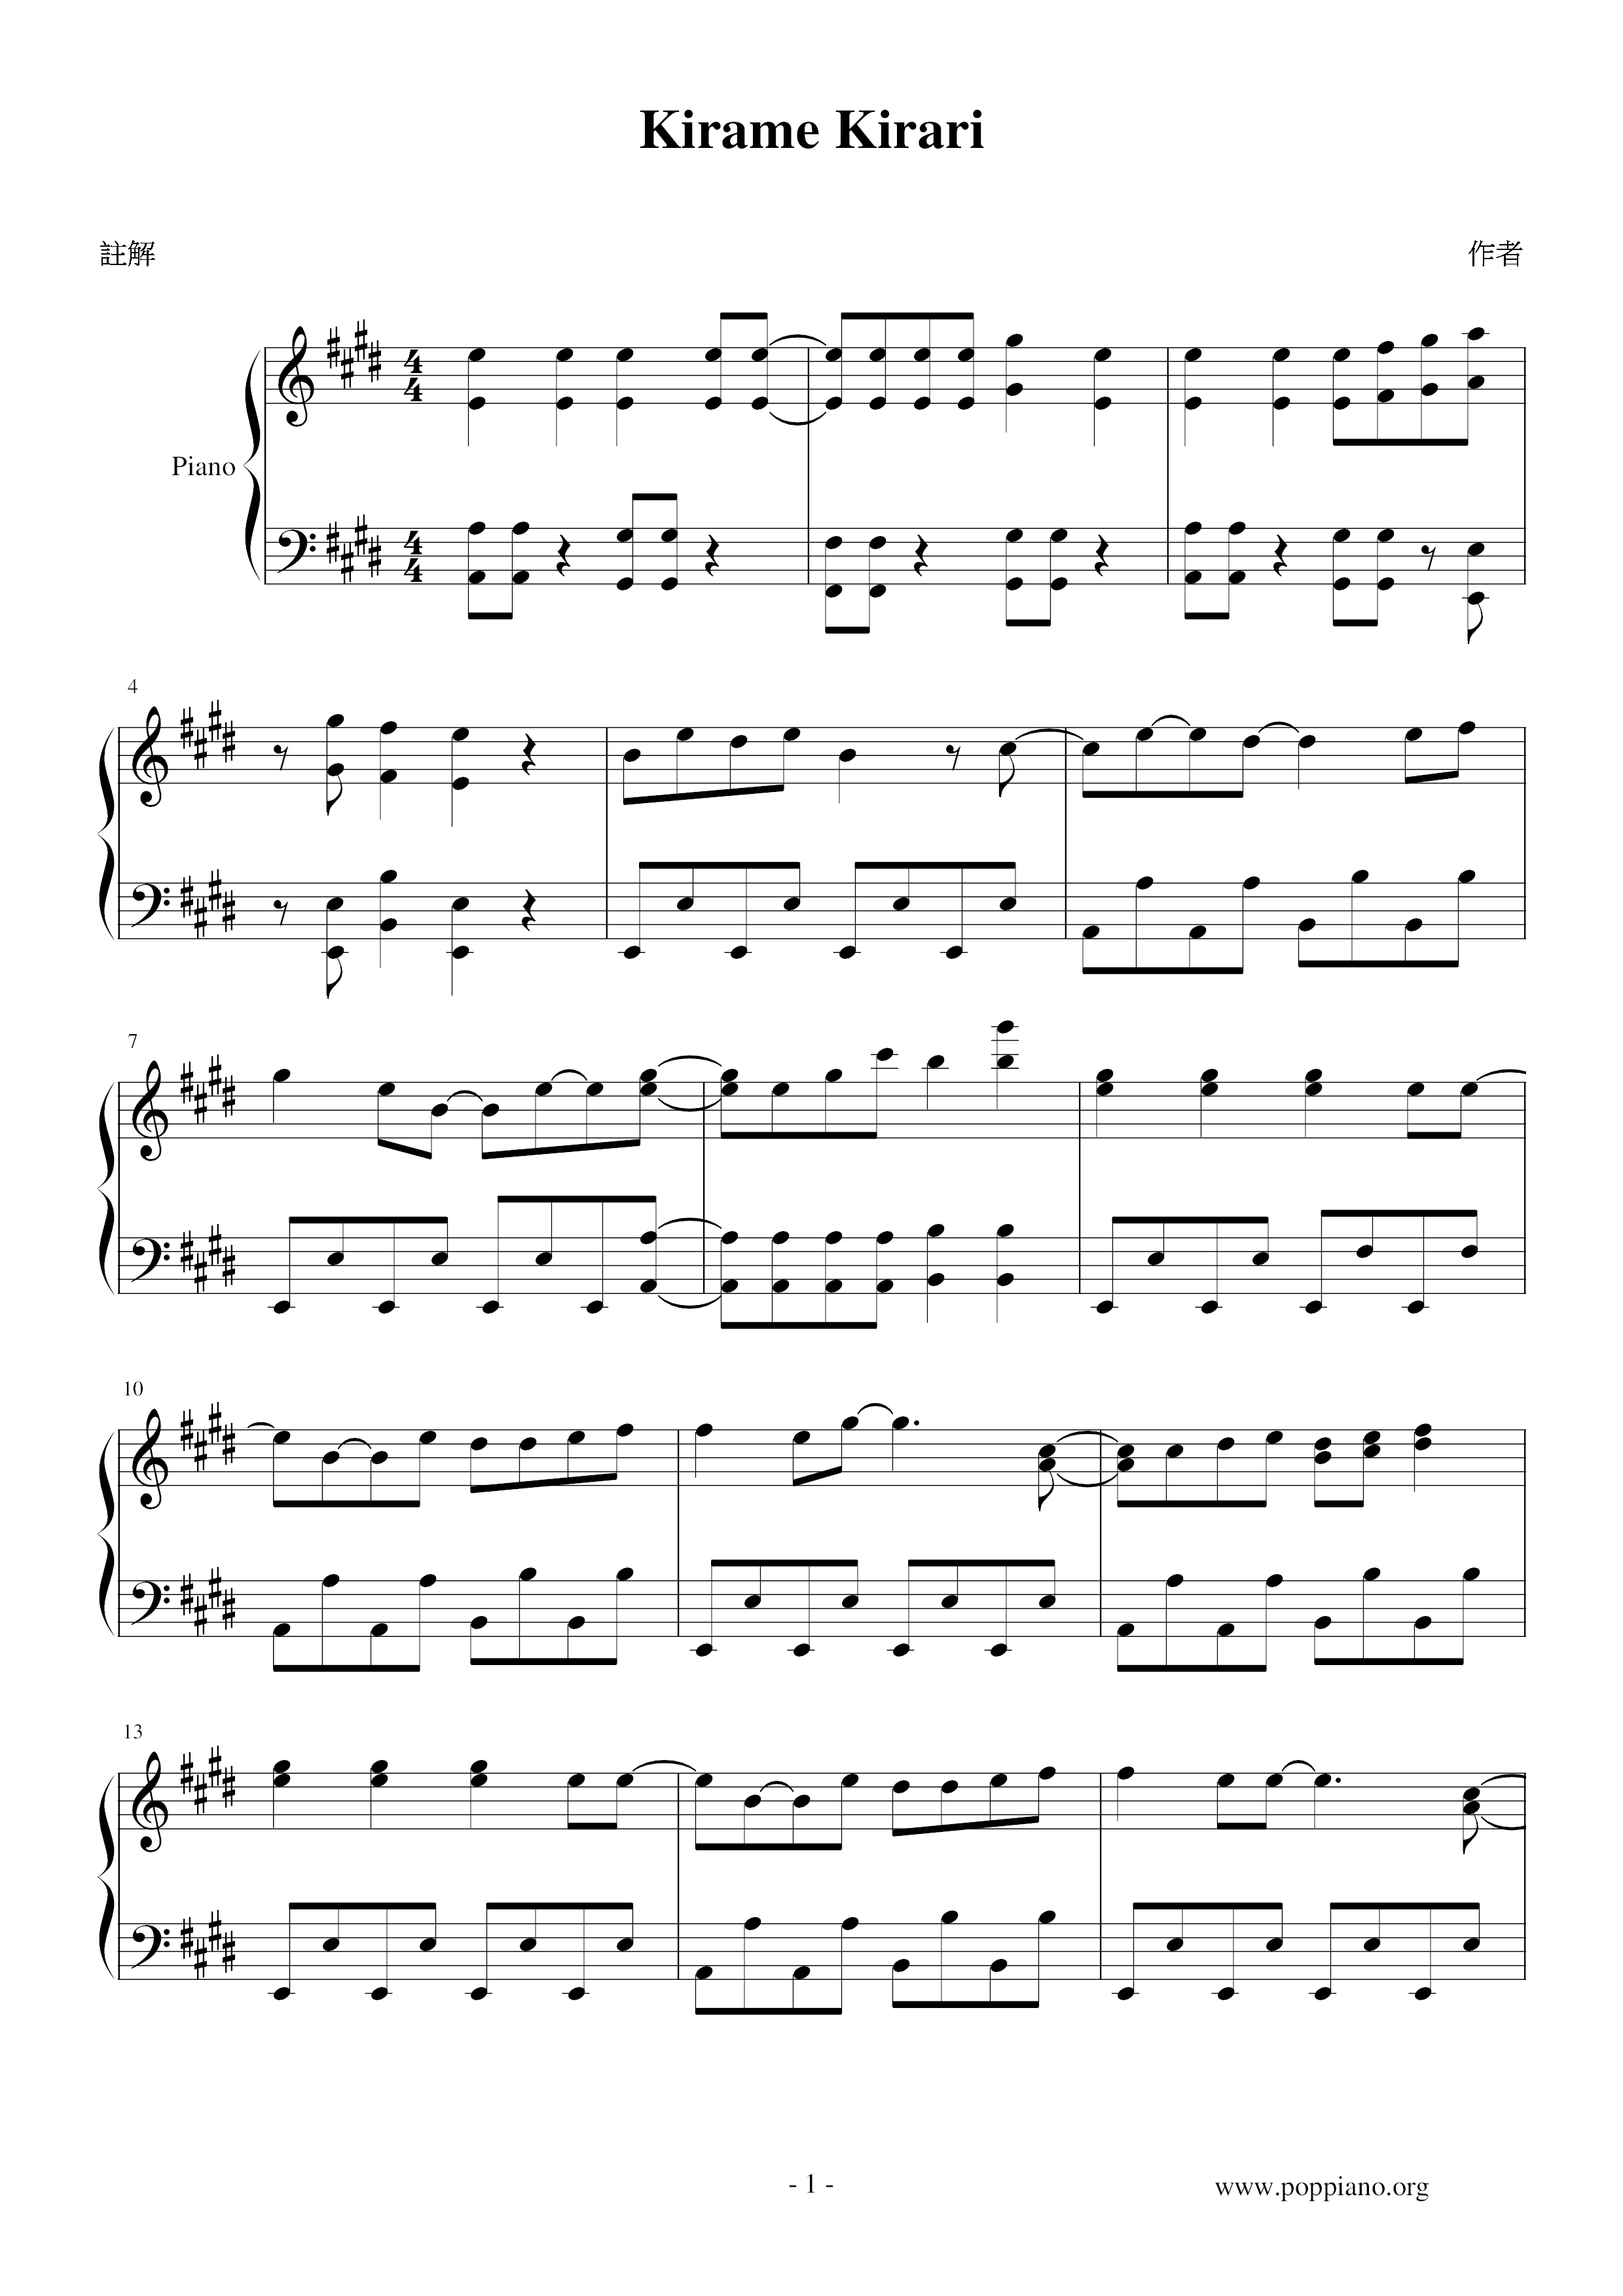 キラメキラリピアノ譜